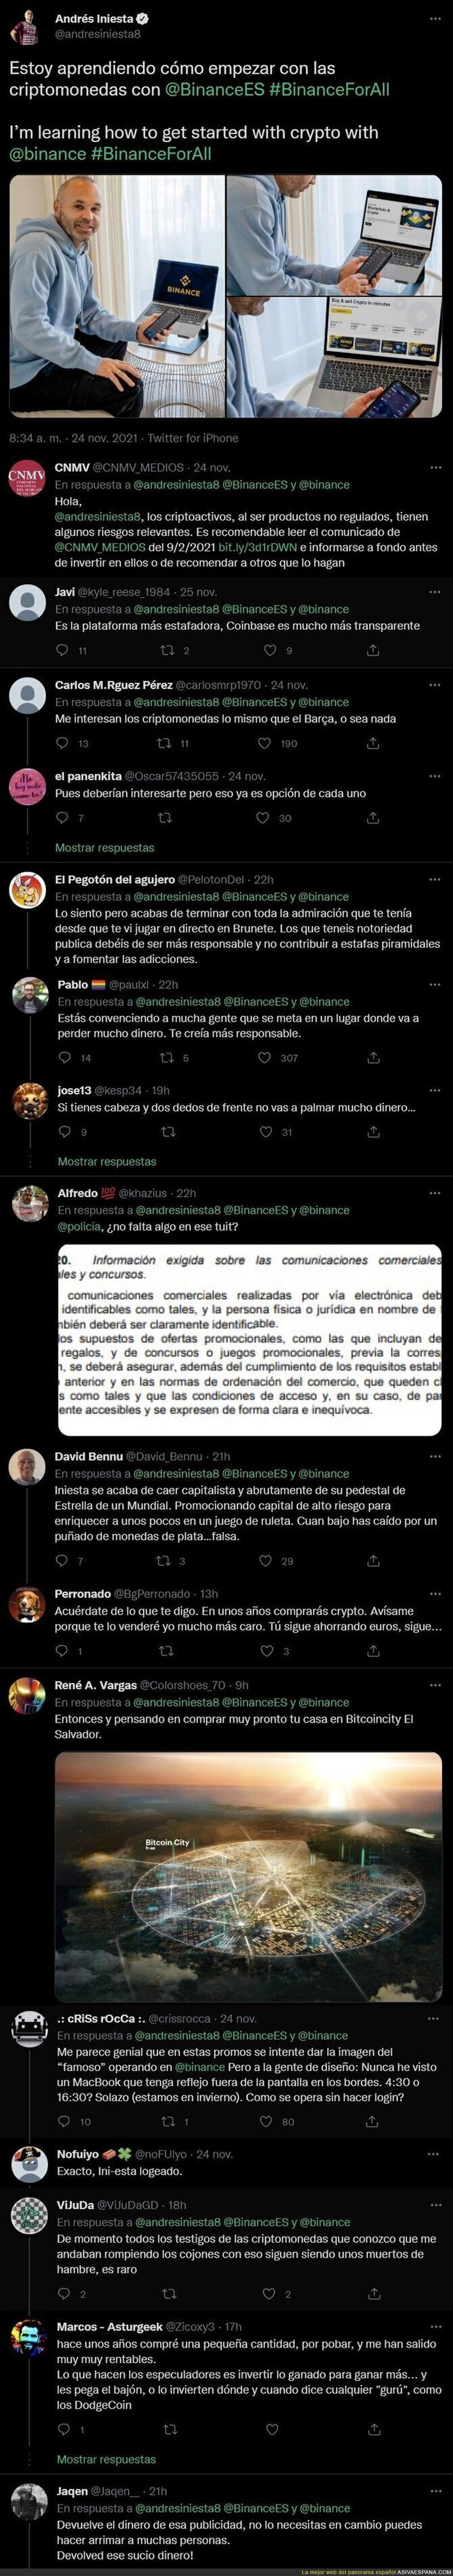 Andrés Iniesta se convierte en enemigo público número uno tras poner este mensaje publicitando las criptomonedas